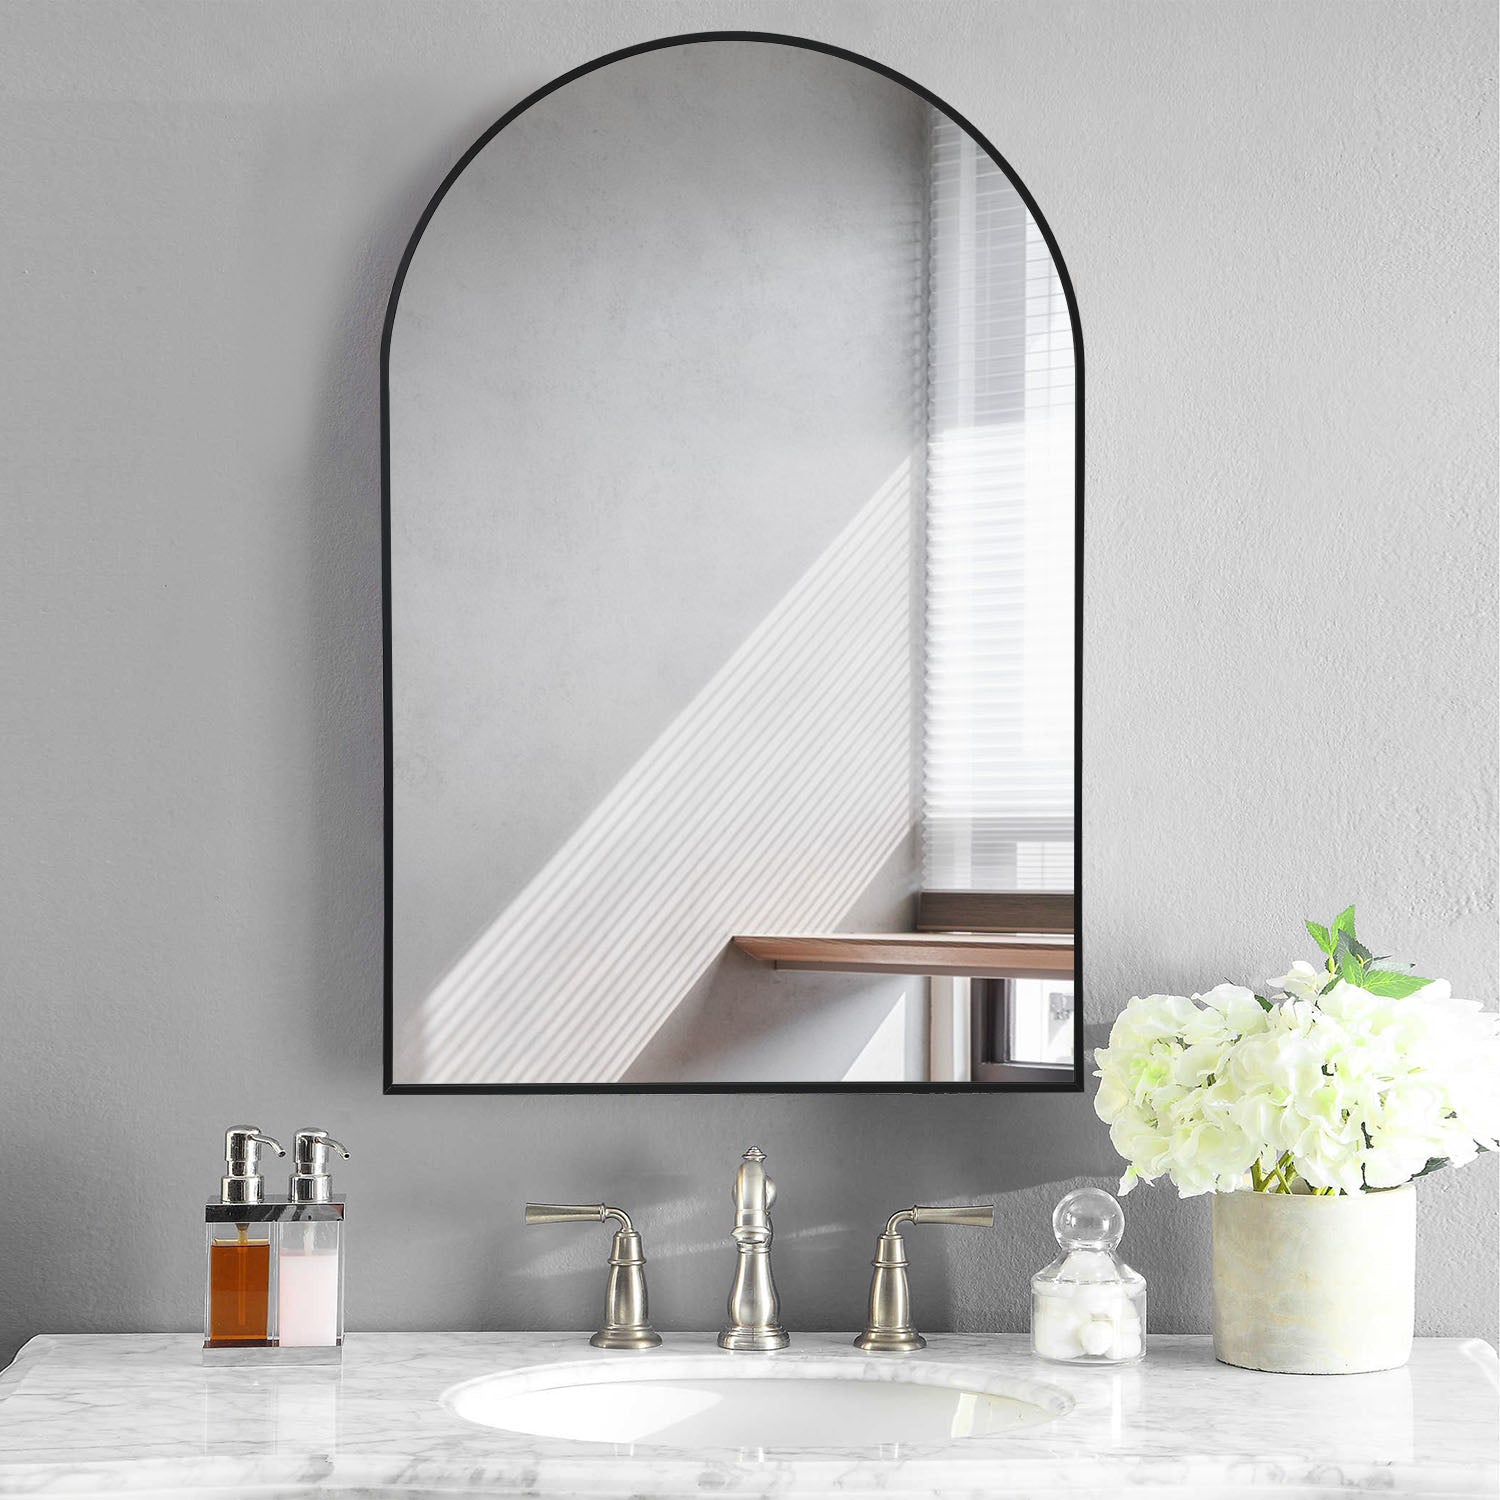 Jocelyn-24"x35" Arched Wall Decor Mirror Bathroom Arch Top Wall Mirror